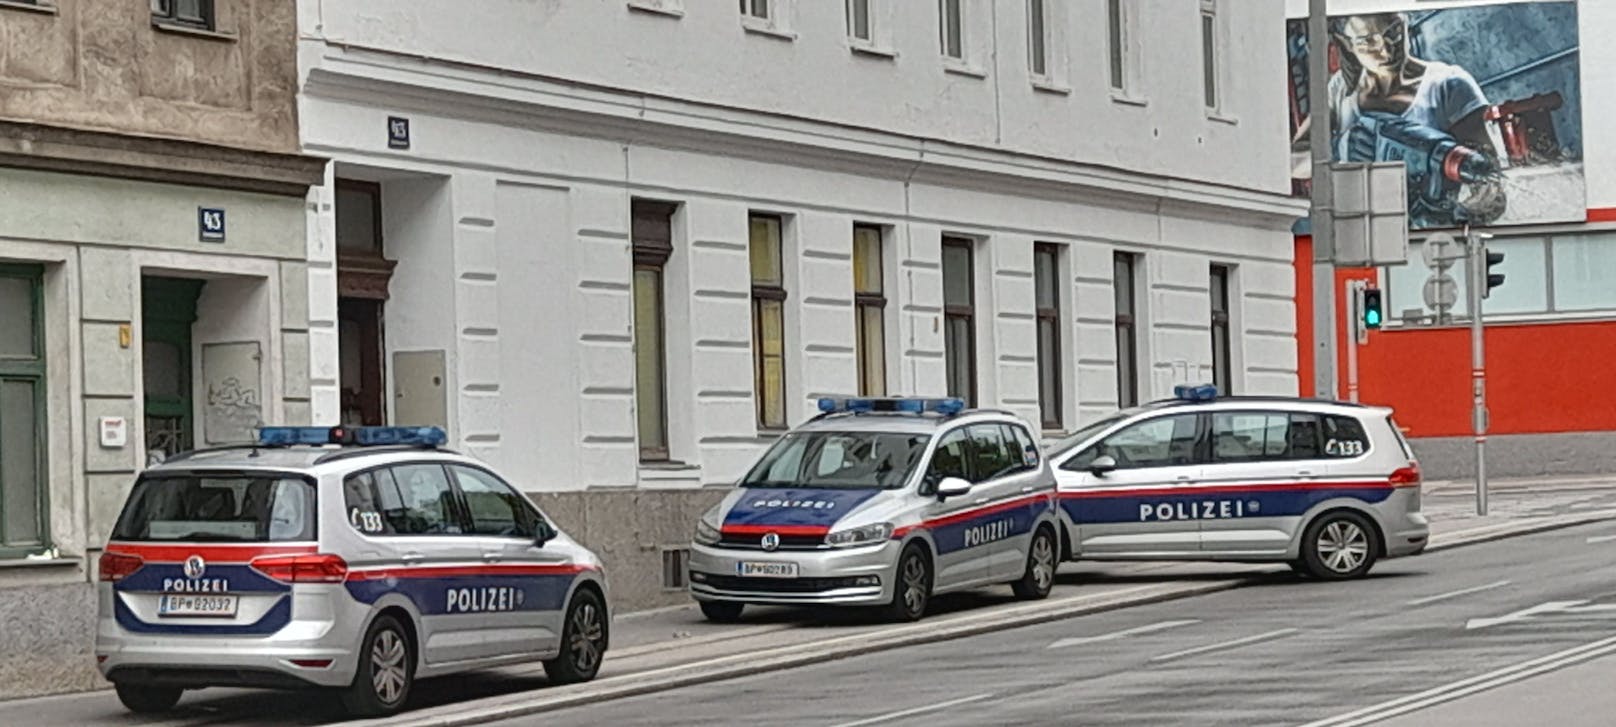 Beamte waren mit mehreren Fahrzeugen in der Ameisgasse in Wien-Penzing vor Ort.